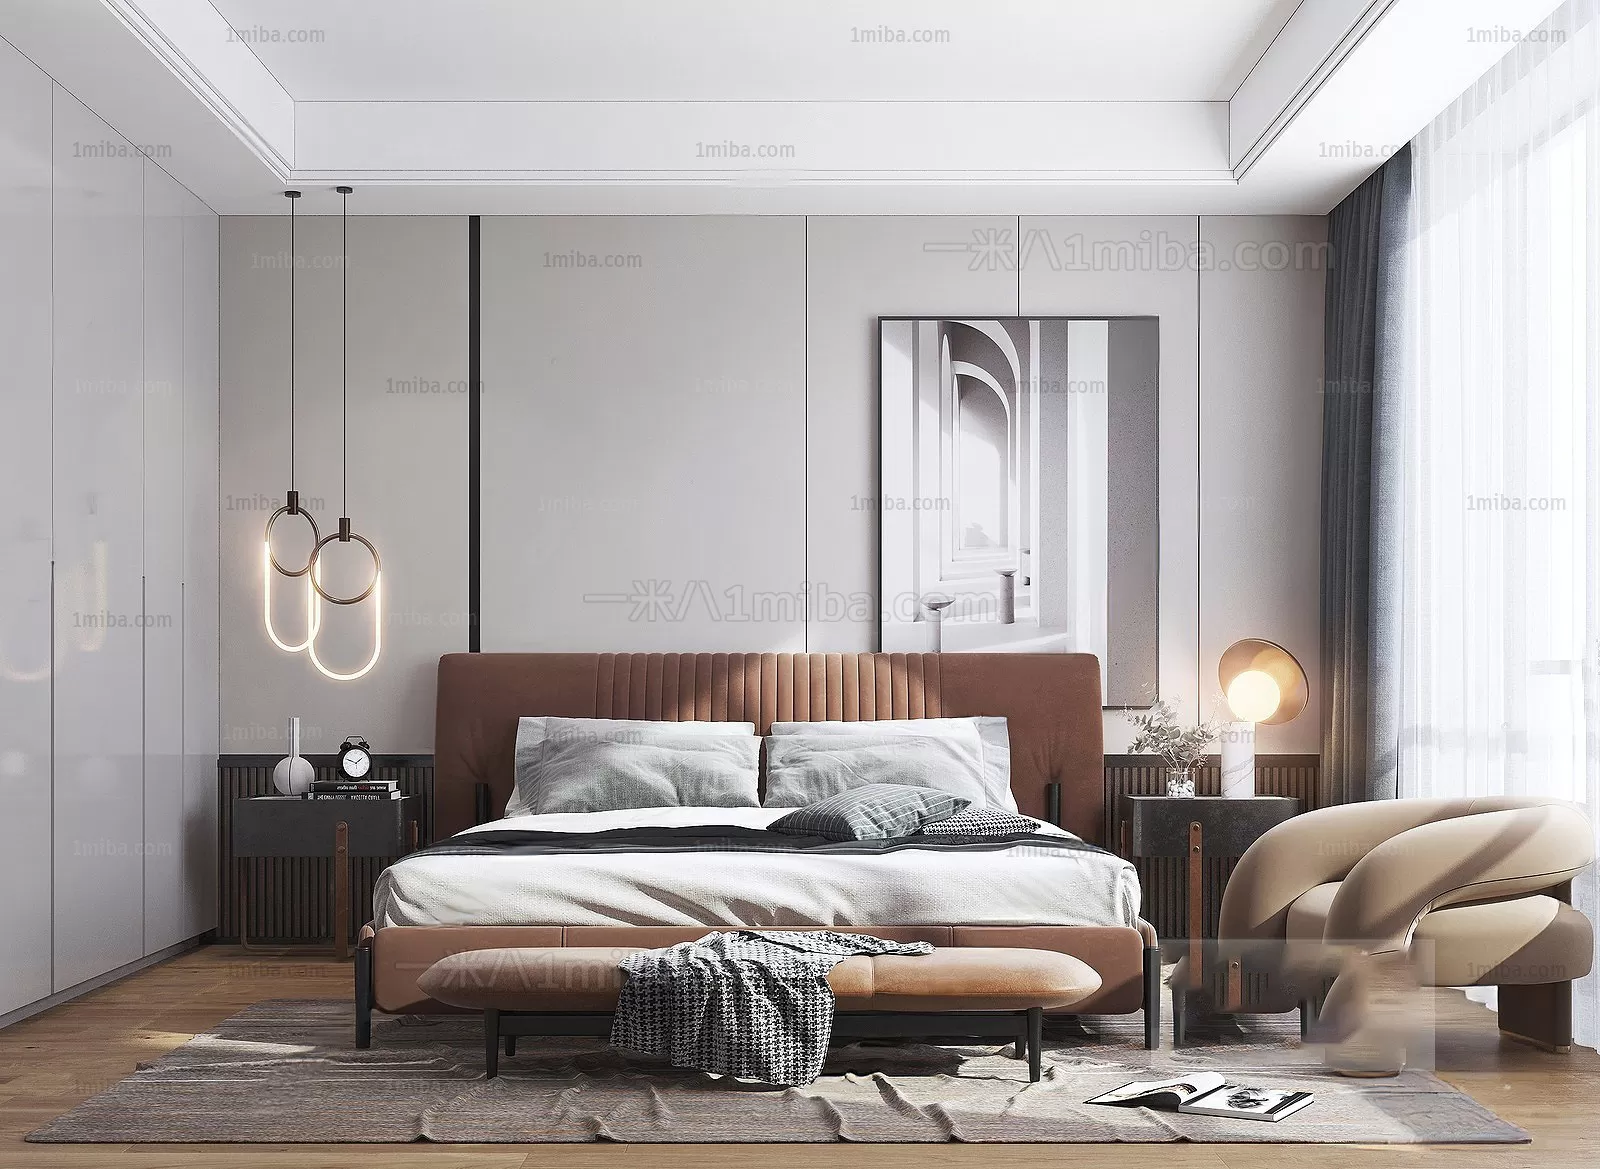 Bedroom – Modern Interior Design – 3D Models – 120